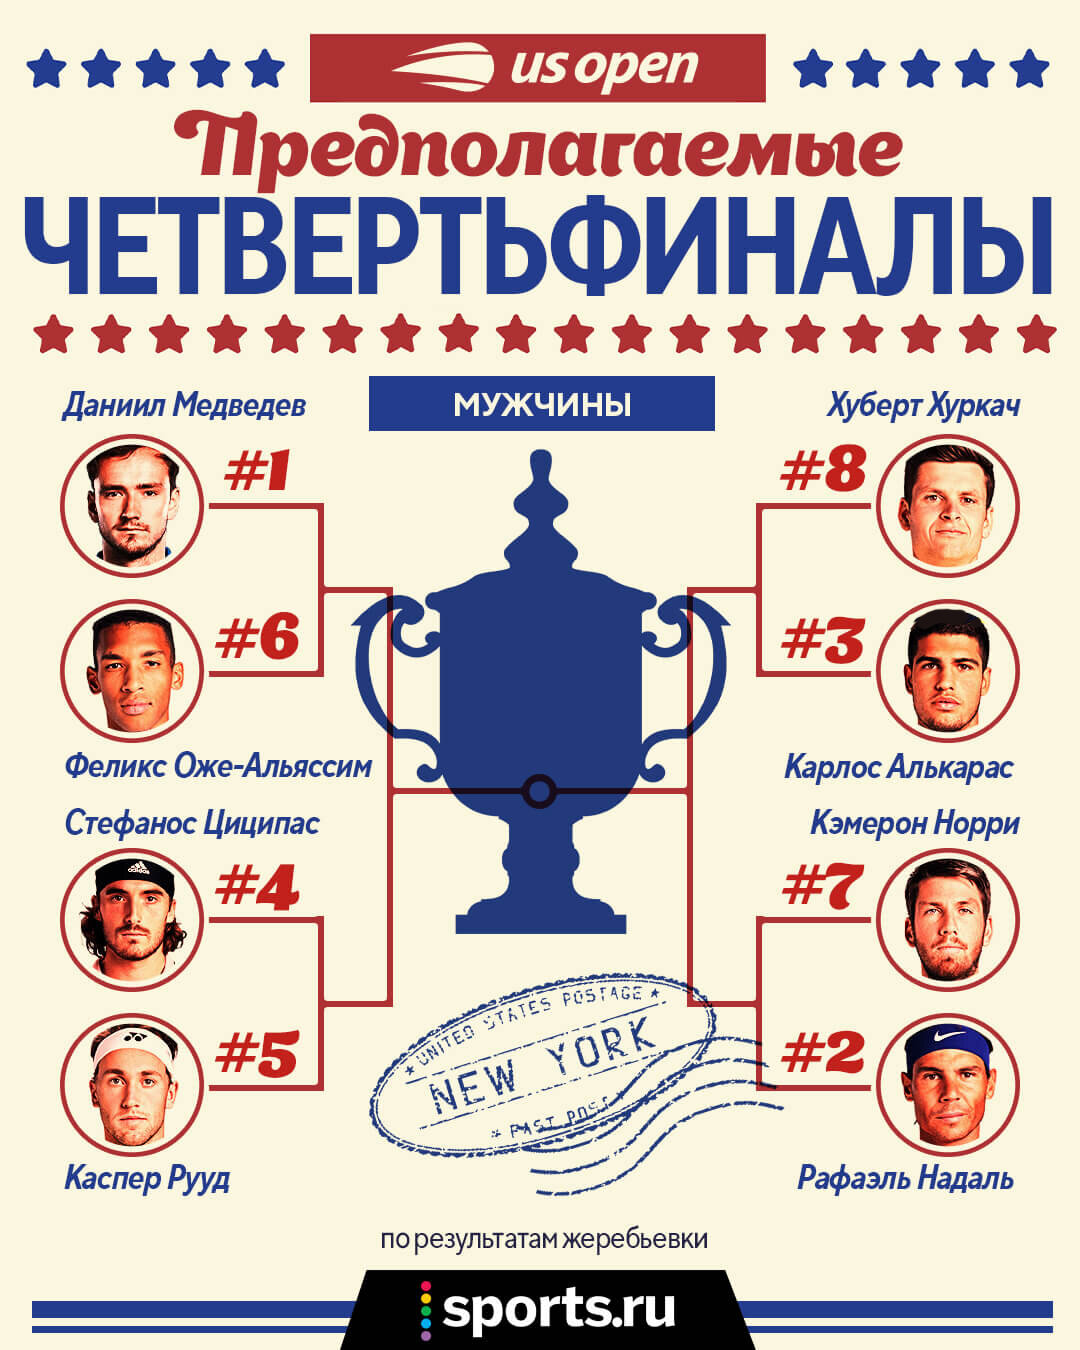 Кого нужно обыграть Медведеву, чтобы взять 2-й US Open? Кто ждет Касаткину? А у женщин вообще есть фаворитки? Изучаем сетки US Open